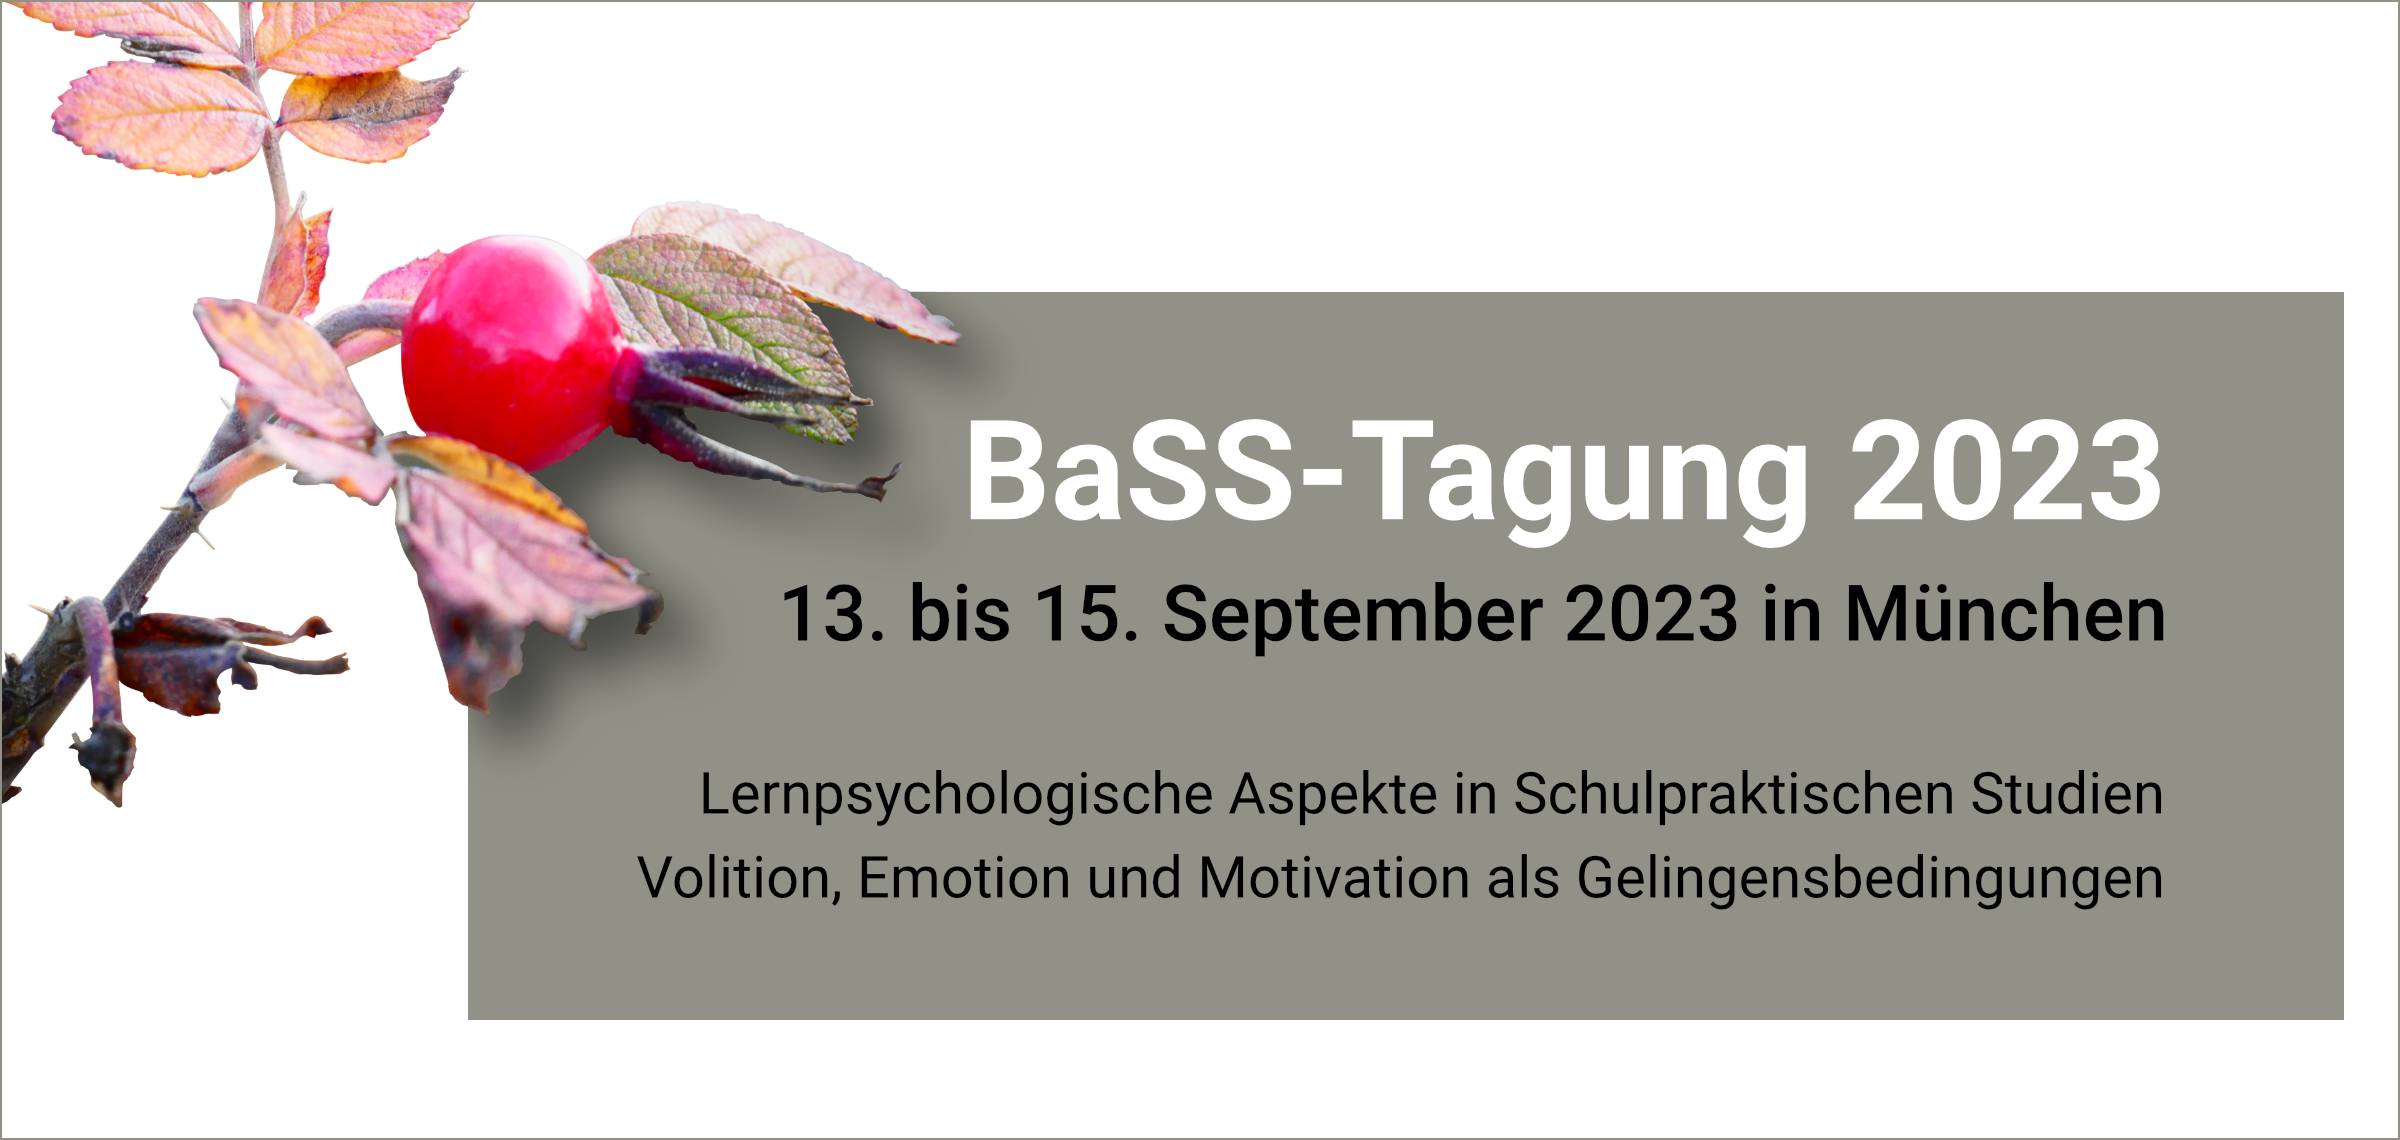 13.-15. September Tagung der BaSS 